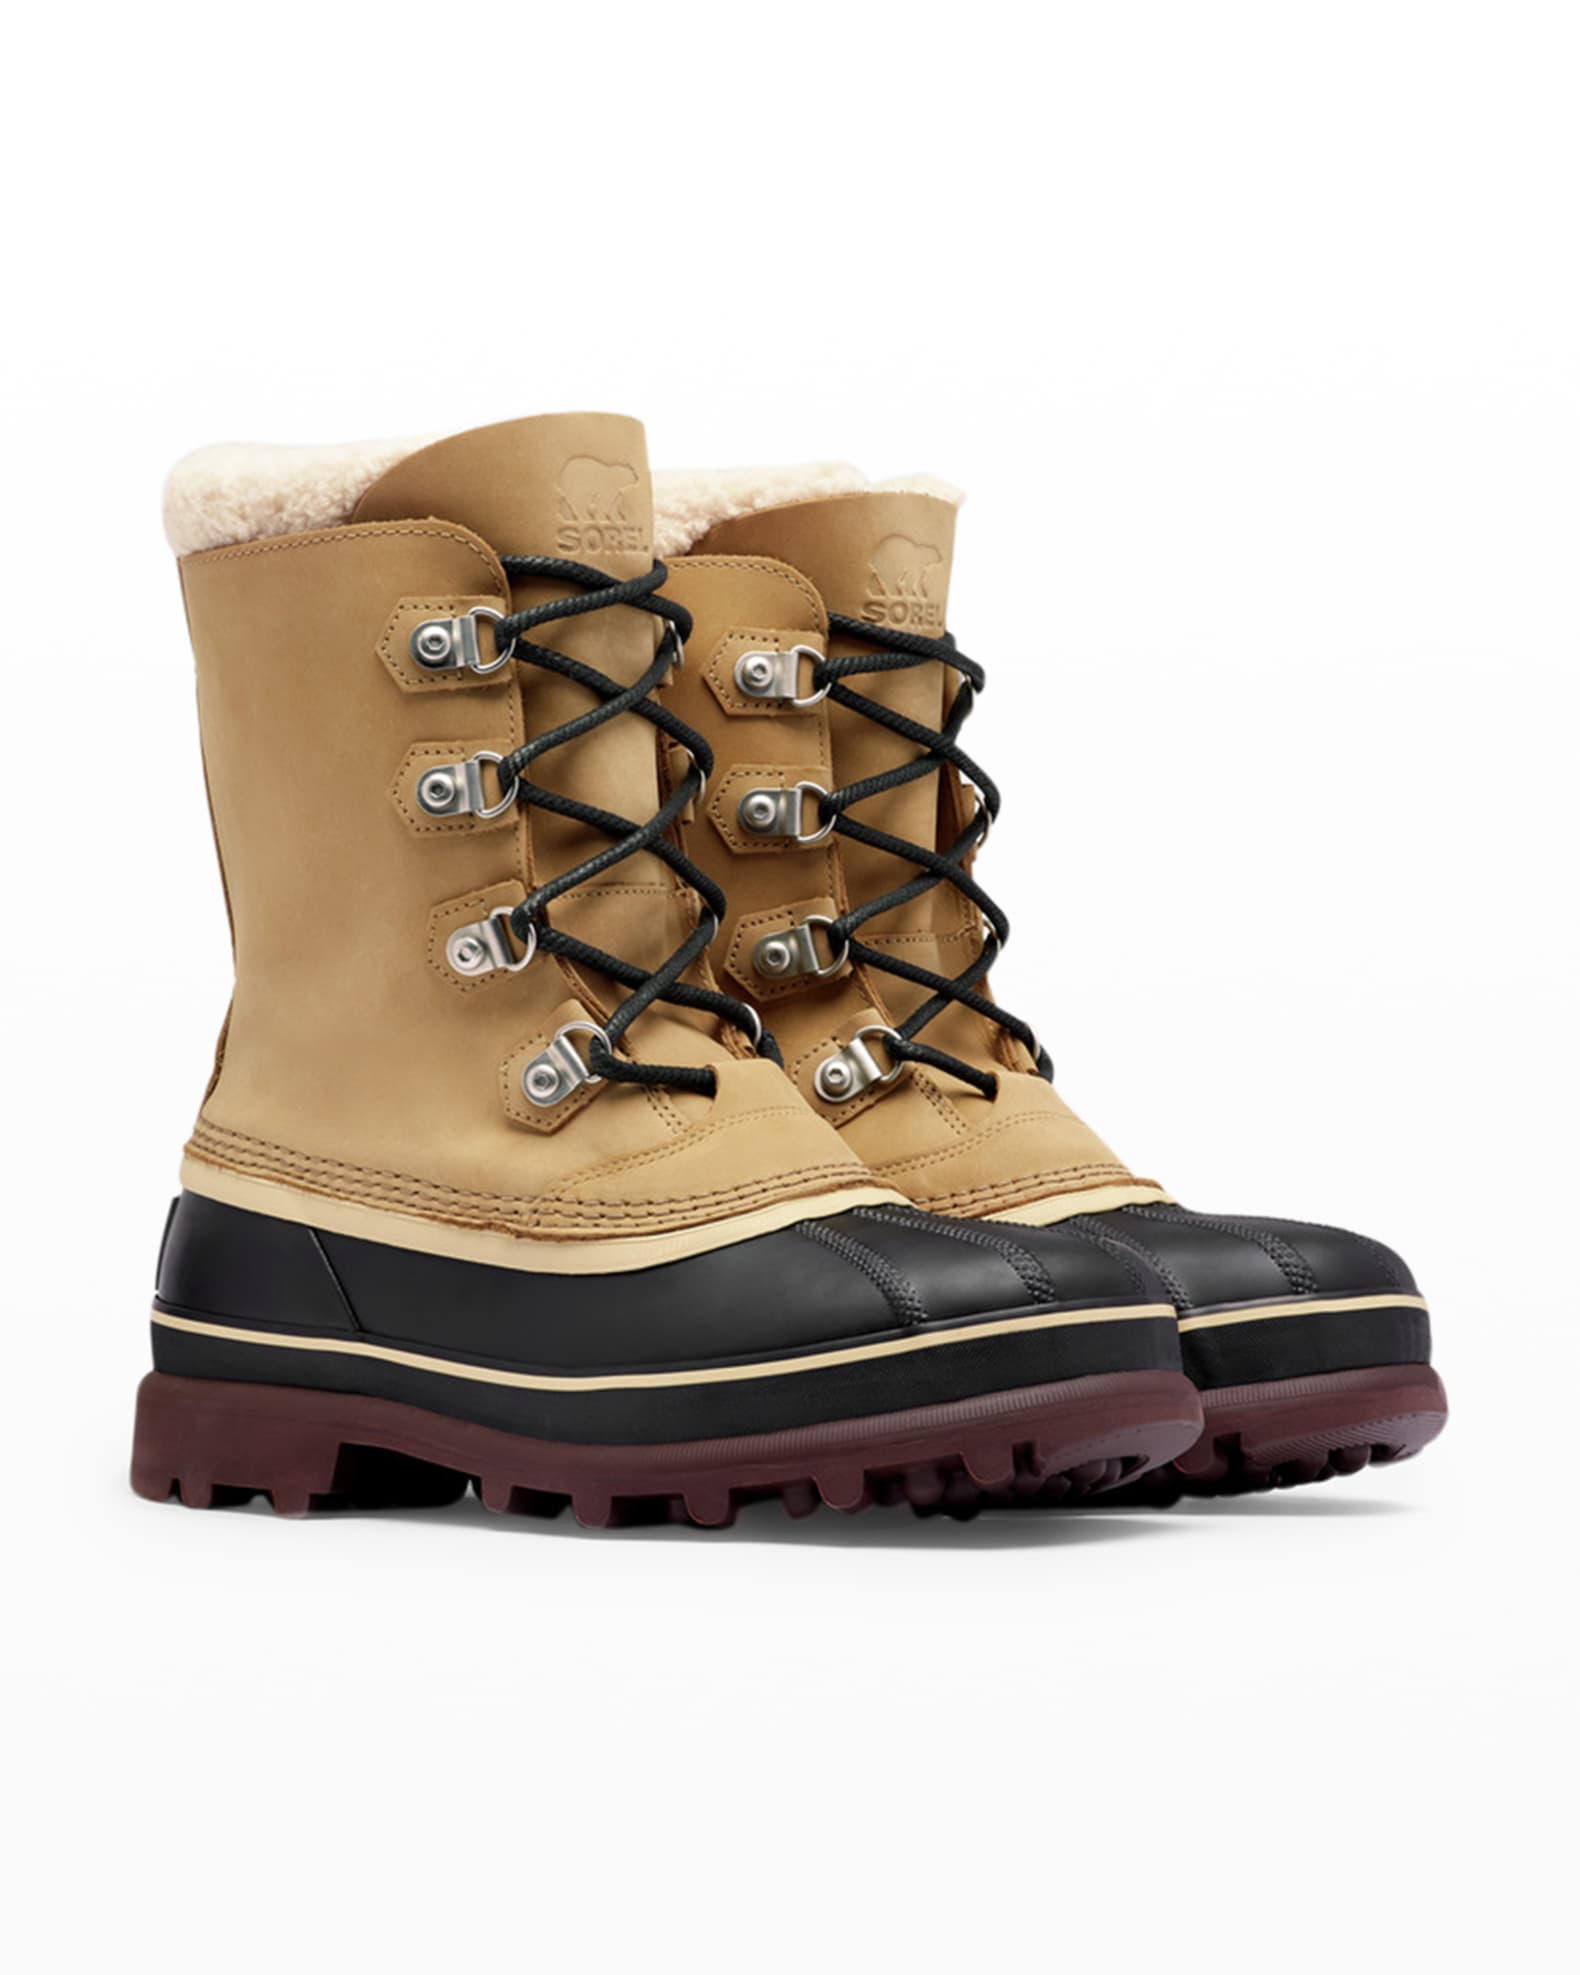 Sorel Men's Caribou Waterproof Boots | Neiman Marcus